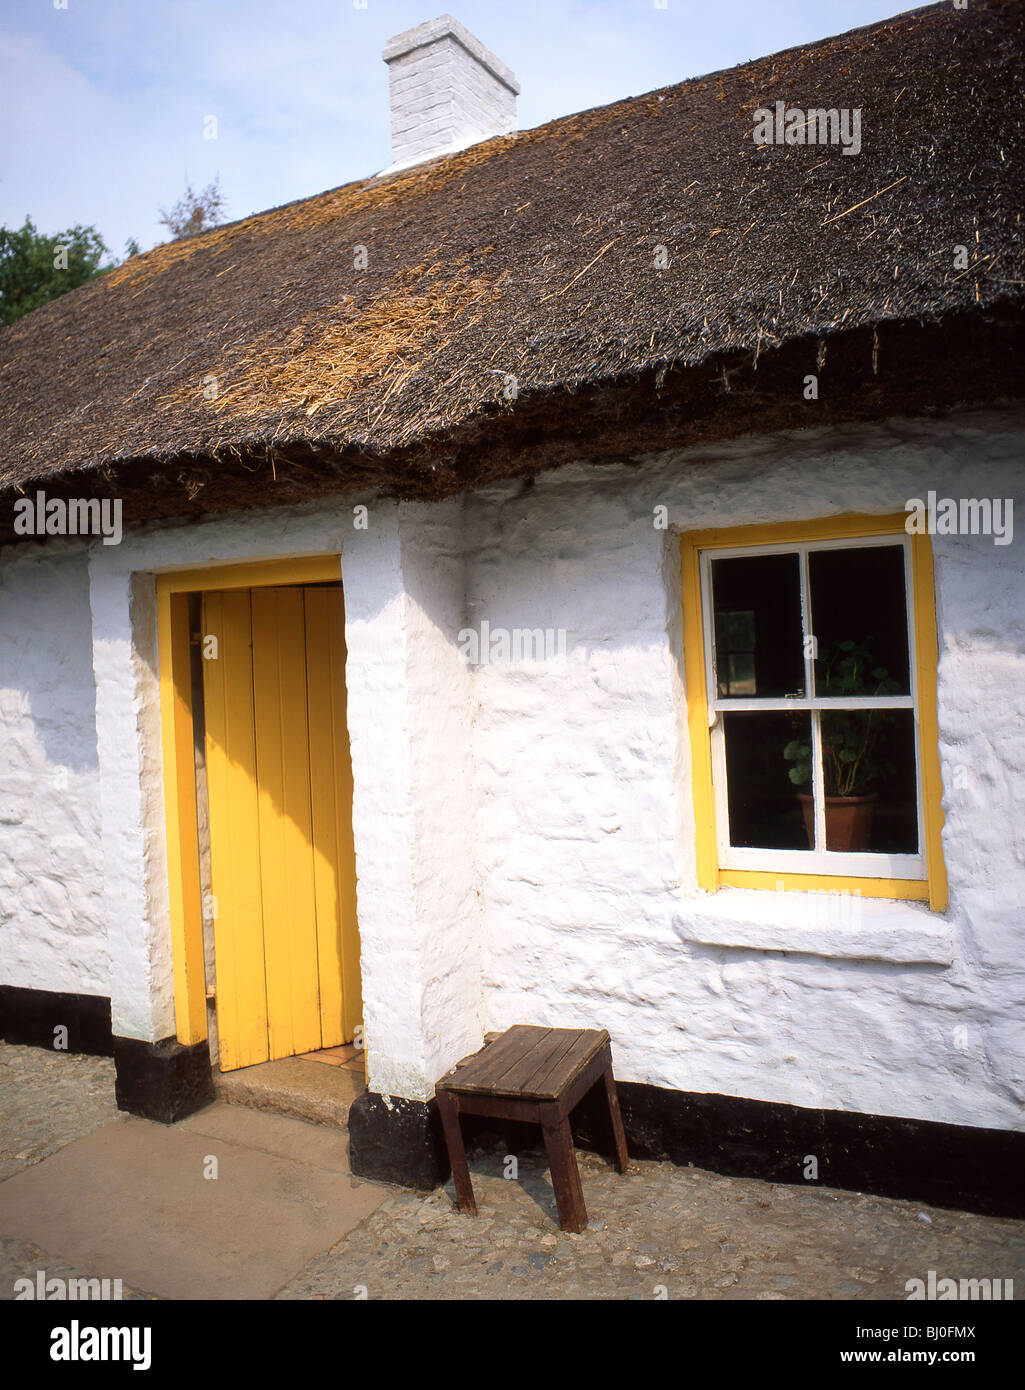 Ferme traditionnelle, Ulster Folk & Transport Museum, comté de Down, Irlande du Nord, Royaume-Uni Banque D'Images